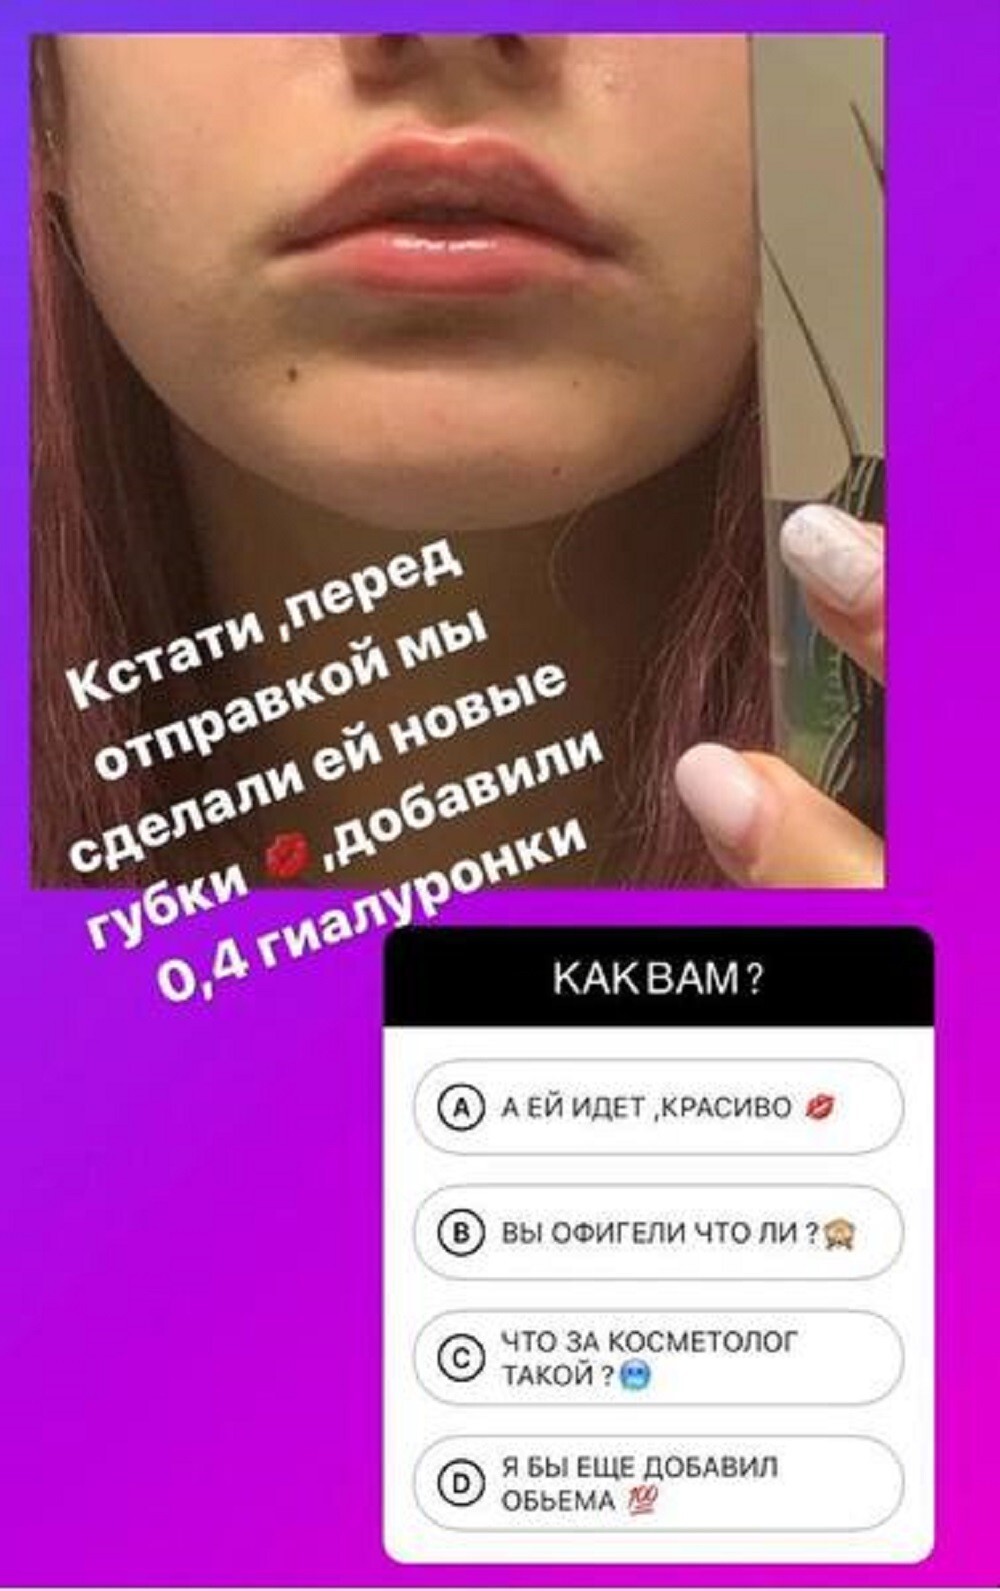 Дана Борисова похвасталась в социальных сетях тем, что увеличила 15-летней дочери губы